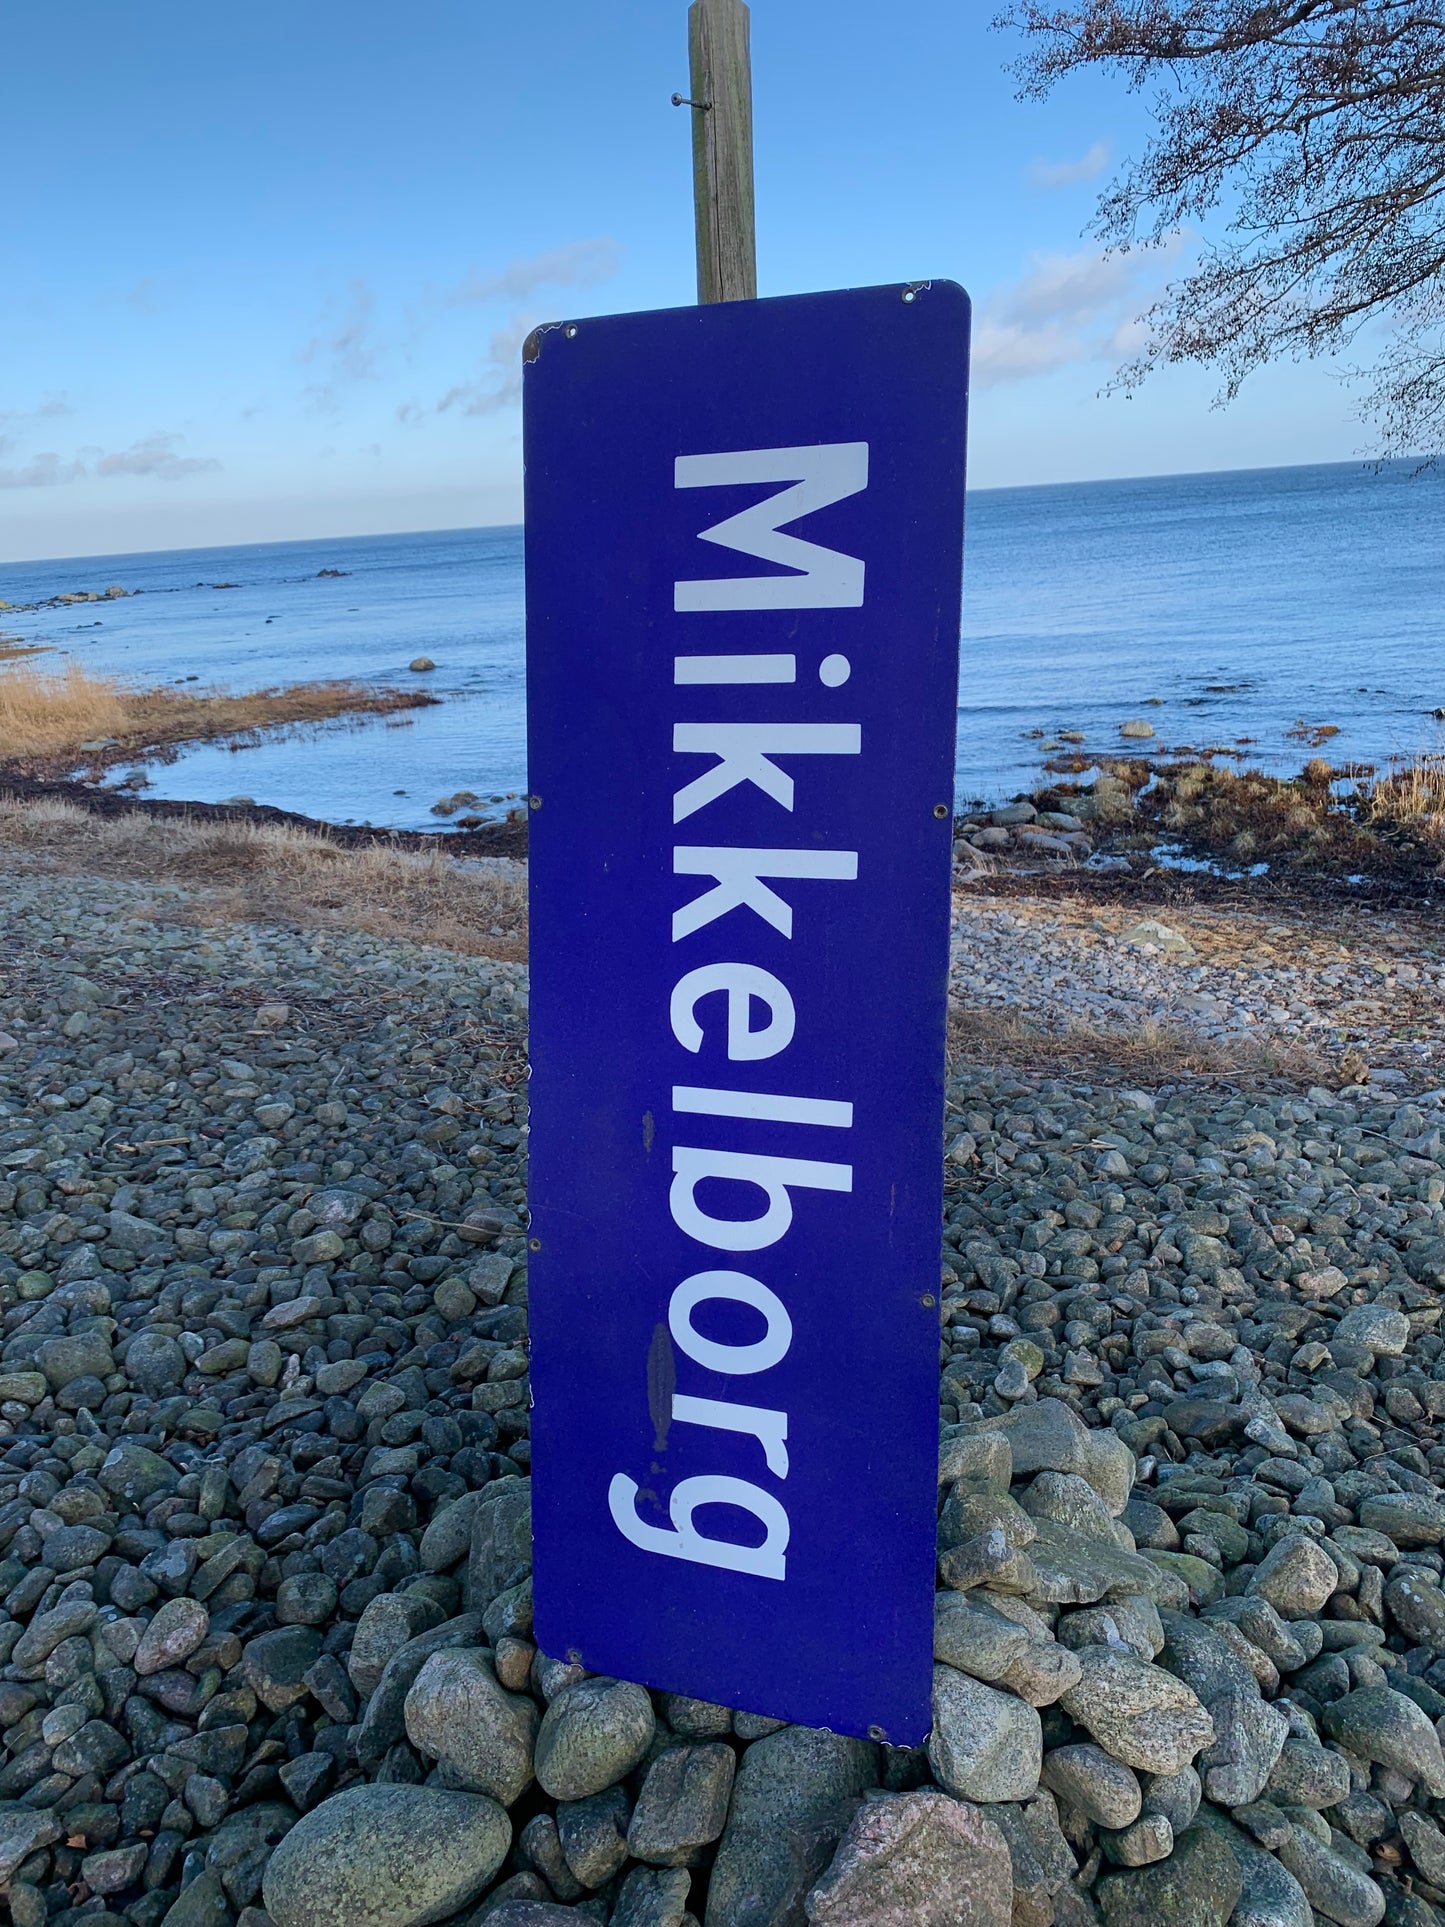 Sign - Mikkelborg